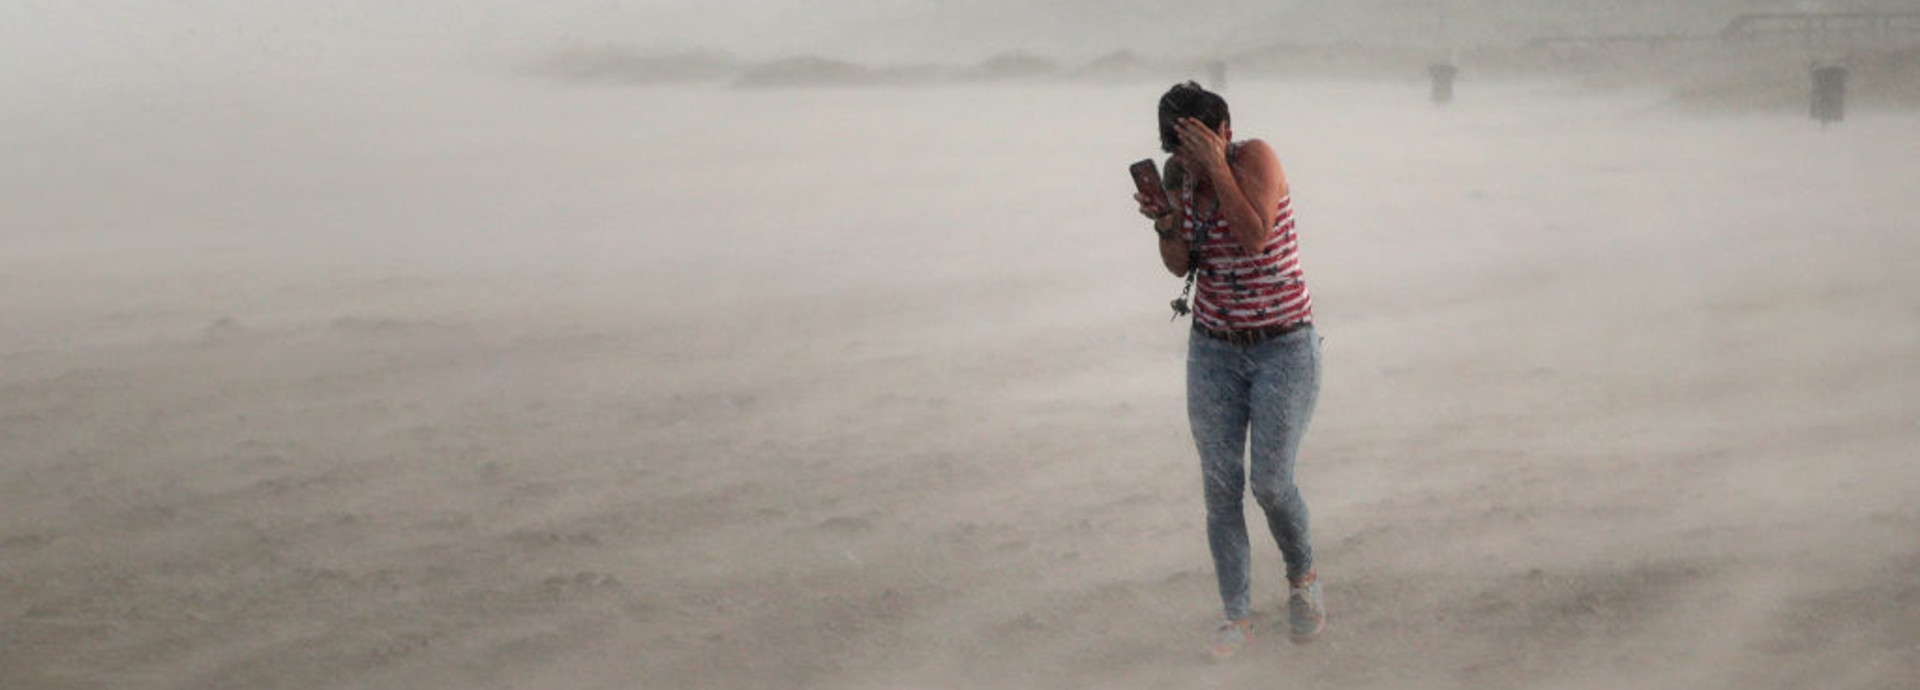 אישה מנסה לתפוס מחסה מהוריקן דוריאן בפלורידה